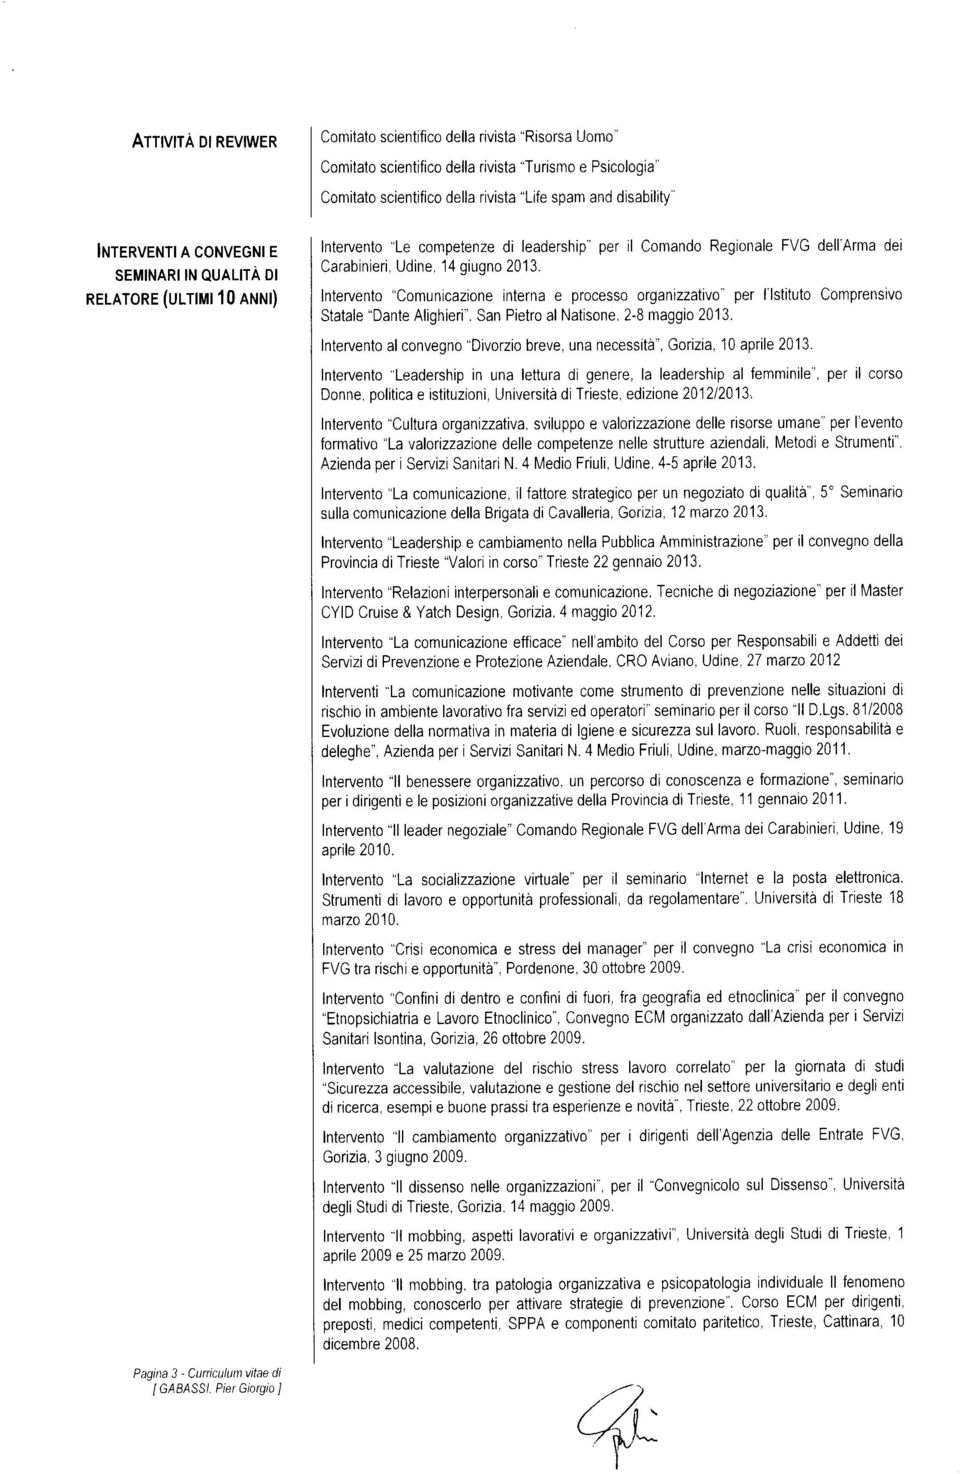 "Comunicazione Intervento interna e processorganizzativo per l'lstituto Comprensivo "Dante Statale Alighieri". San Pietro al Natisone, 2-8 maggio 2013.